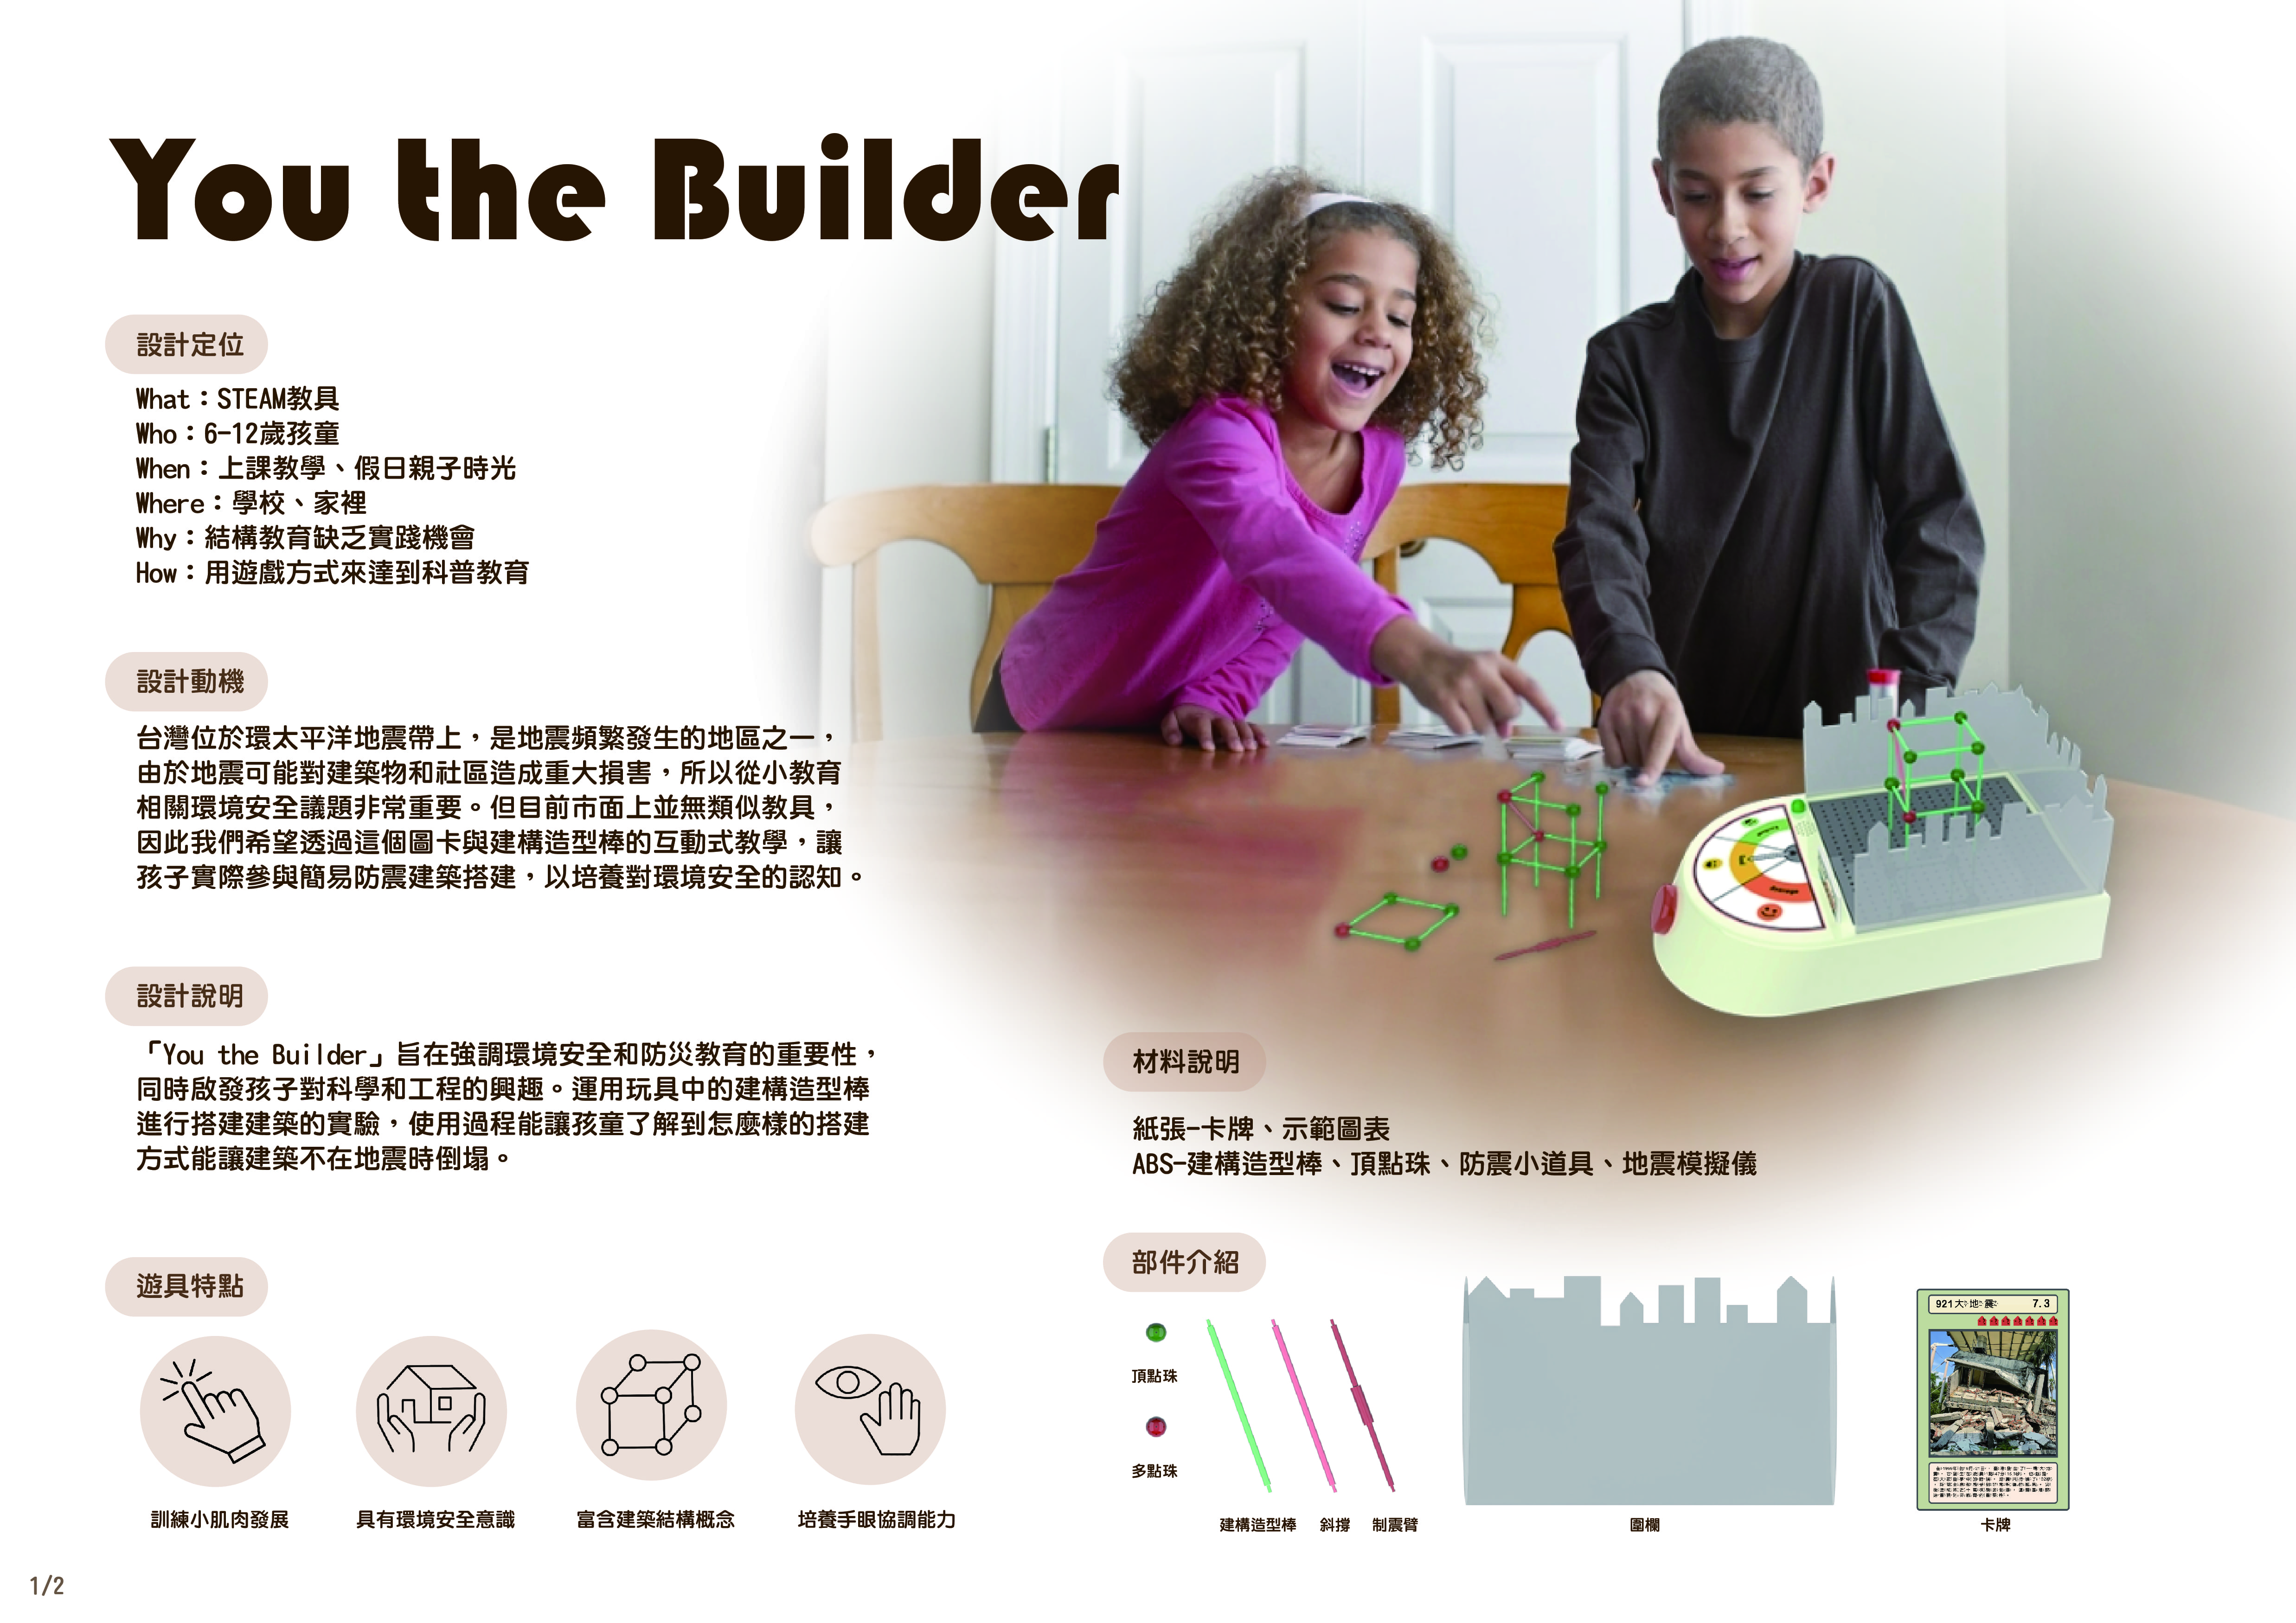 圖為亞大商品系周侑萱、翁菀妤同學的「地震模擬建構棒 」作品，獲「2024奇想設計大賽」佳作獎。